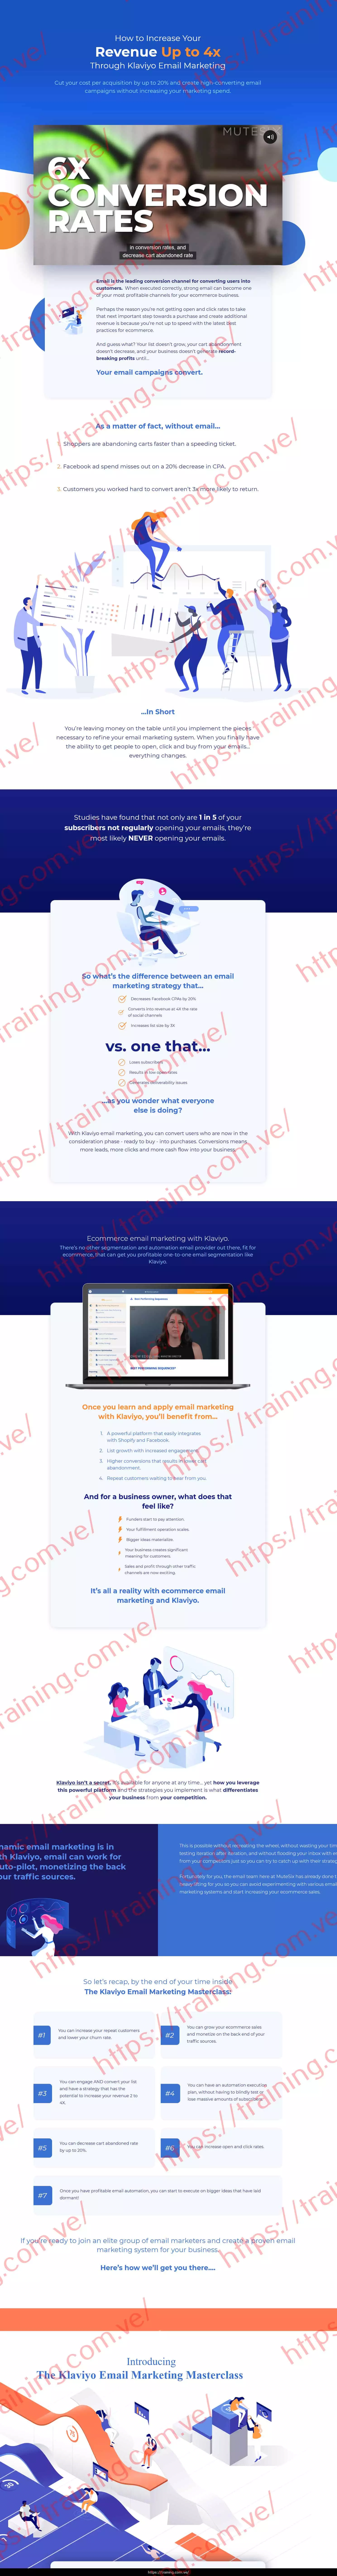 MuteSix Klaviyo Email Marketing Masterclass Sales page